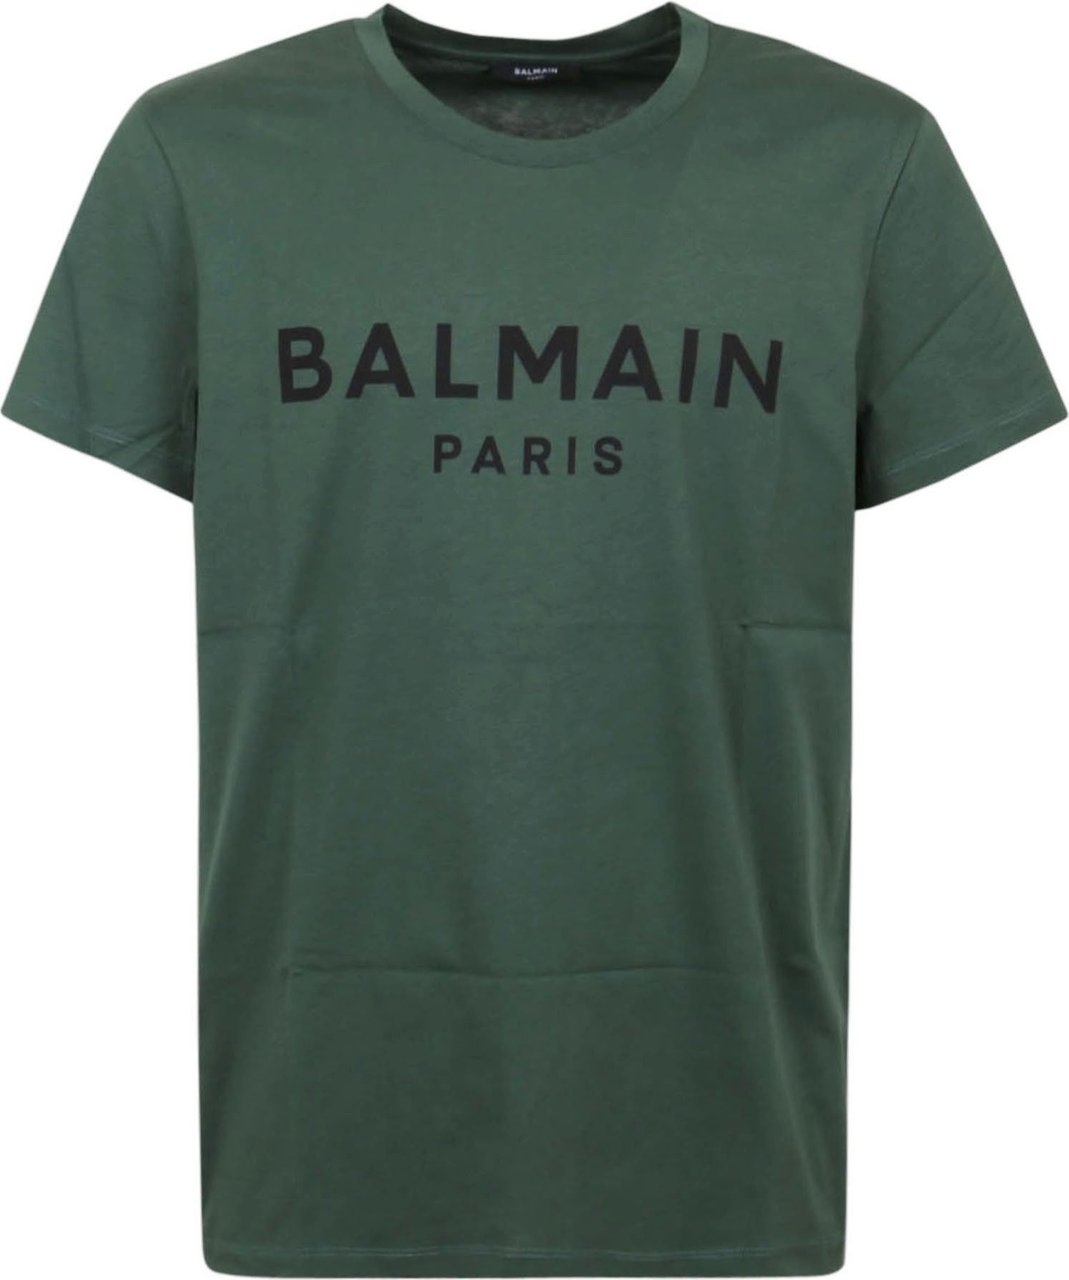 Balmain Printed T-Shirt - Classic Fit Divers